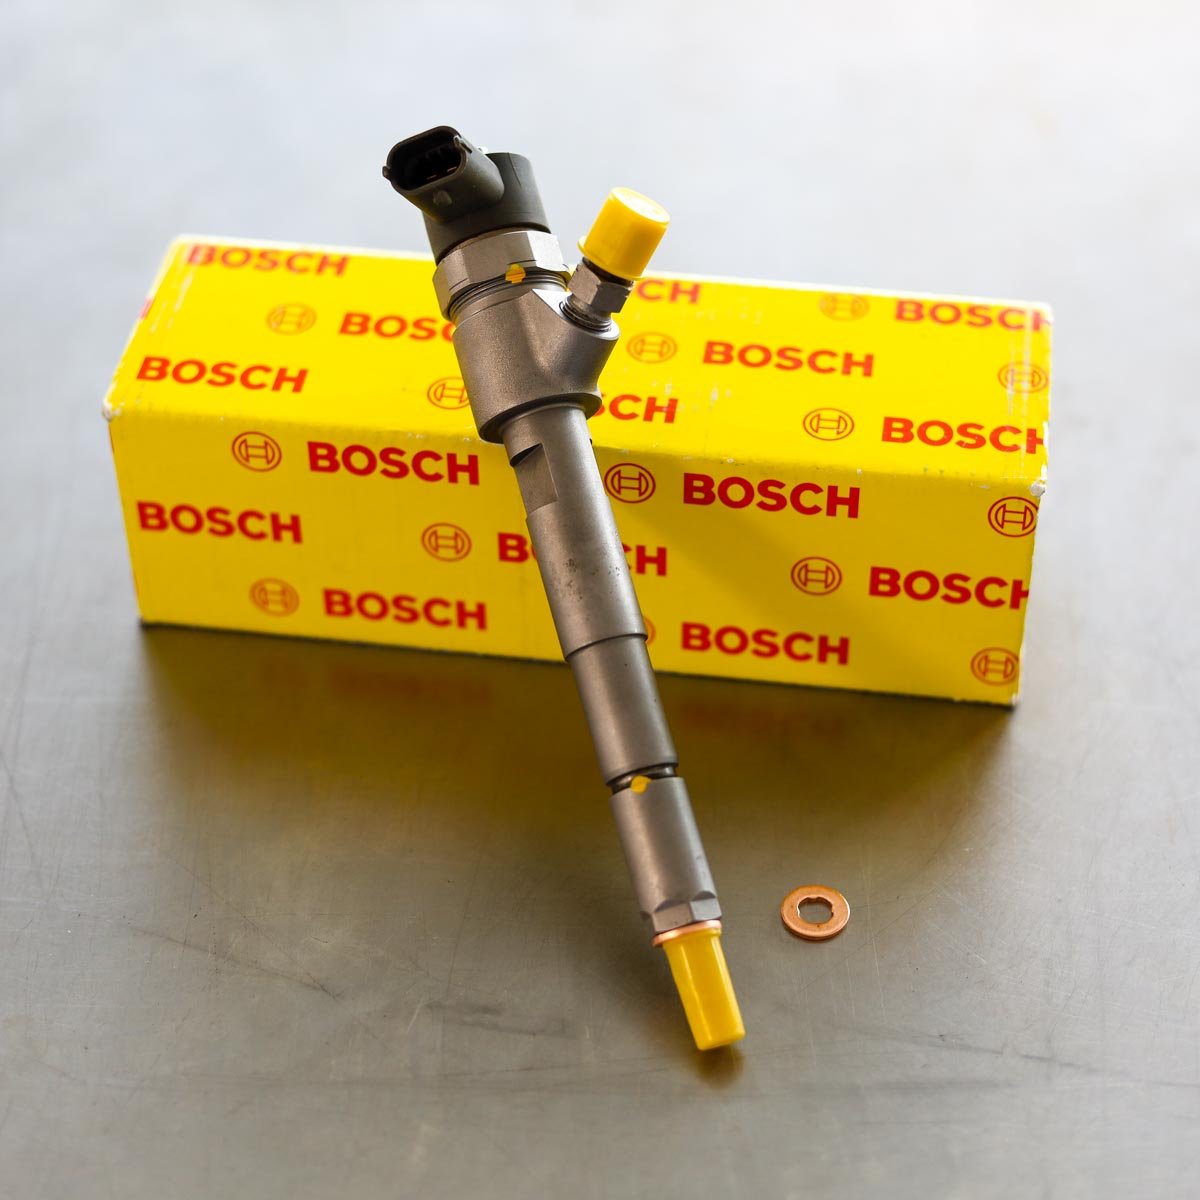 Wtryskiwacz Bosch naprawiony gotowy do nadania do Klienta na gwarancji w atrakcyjnej cenie